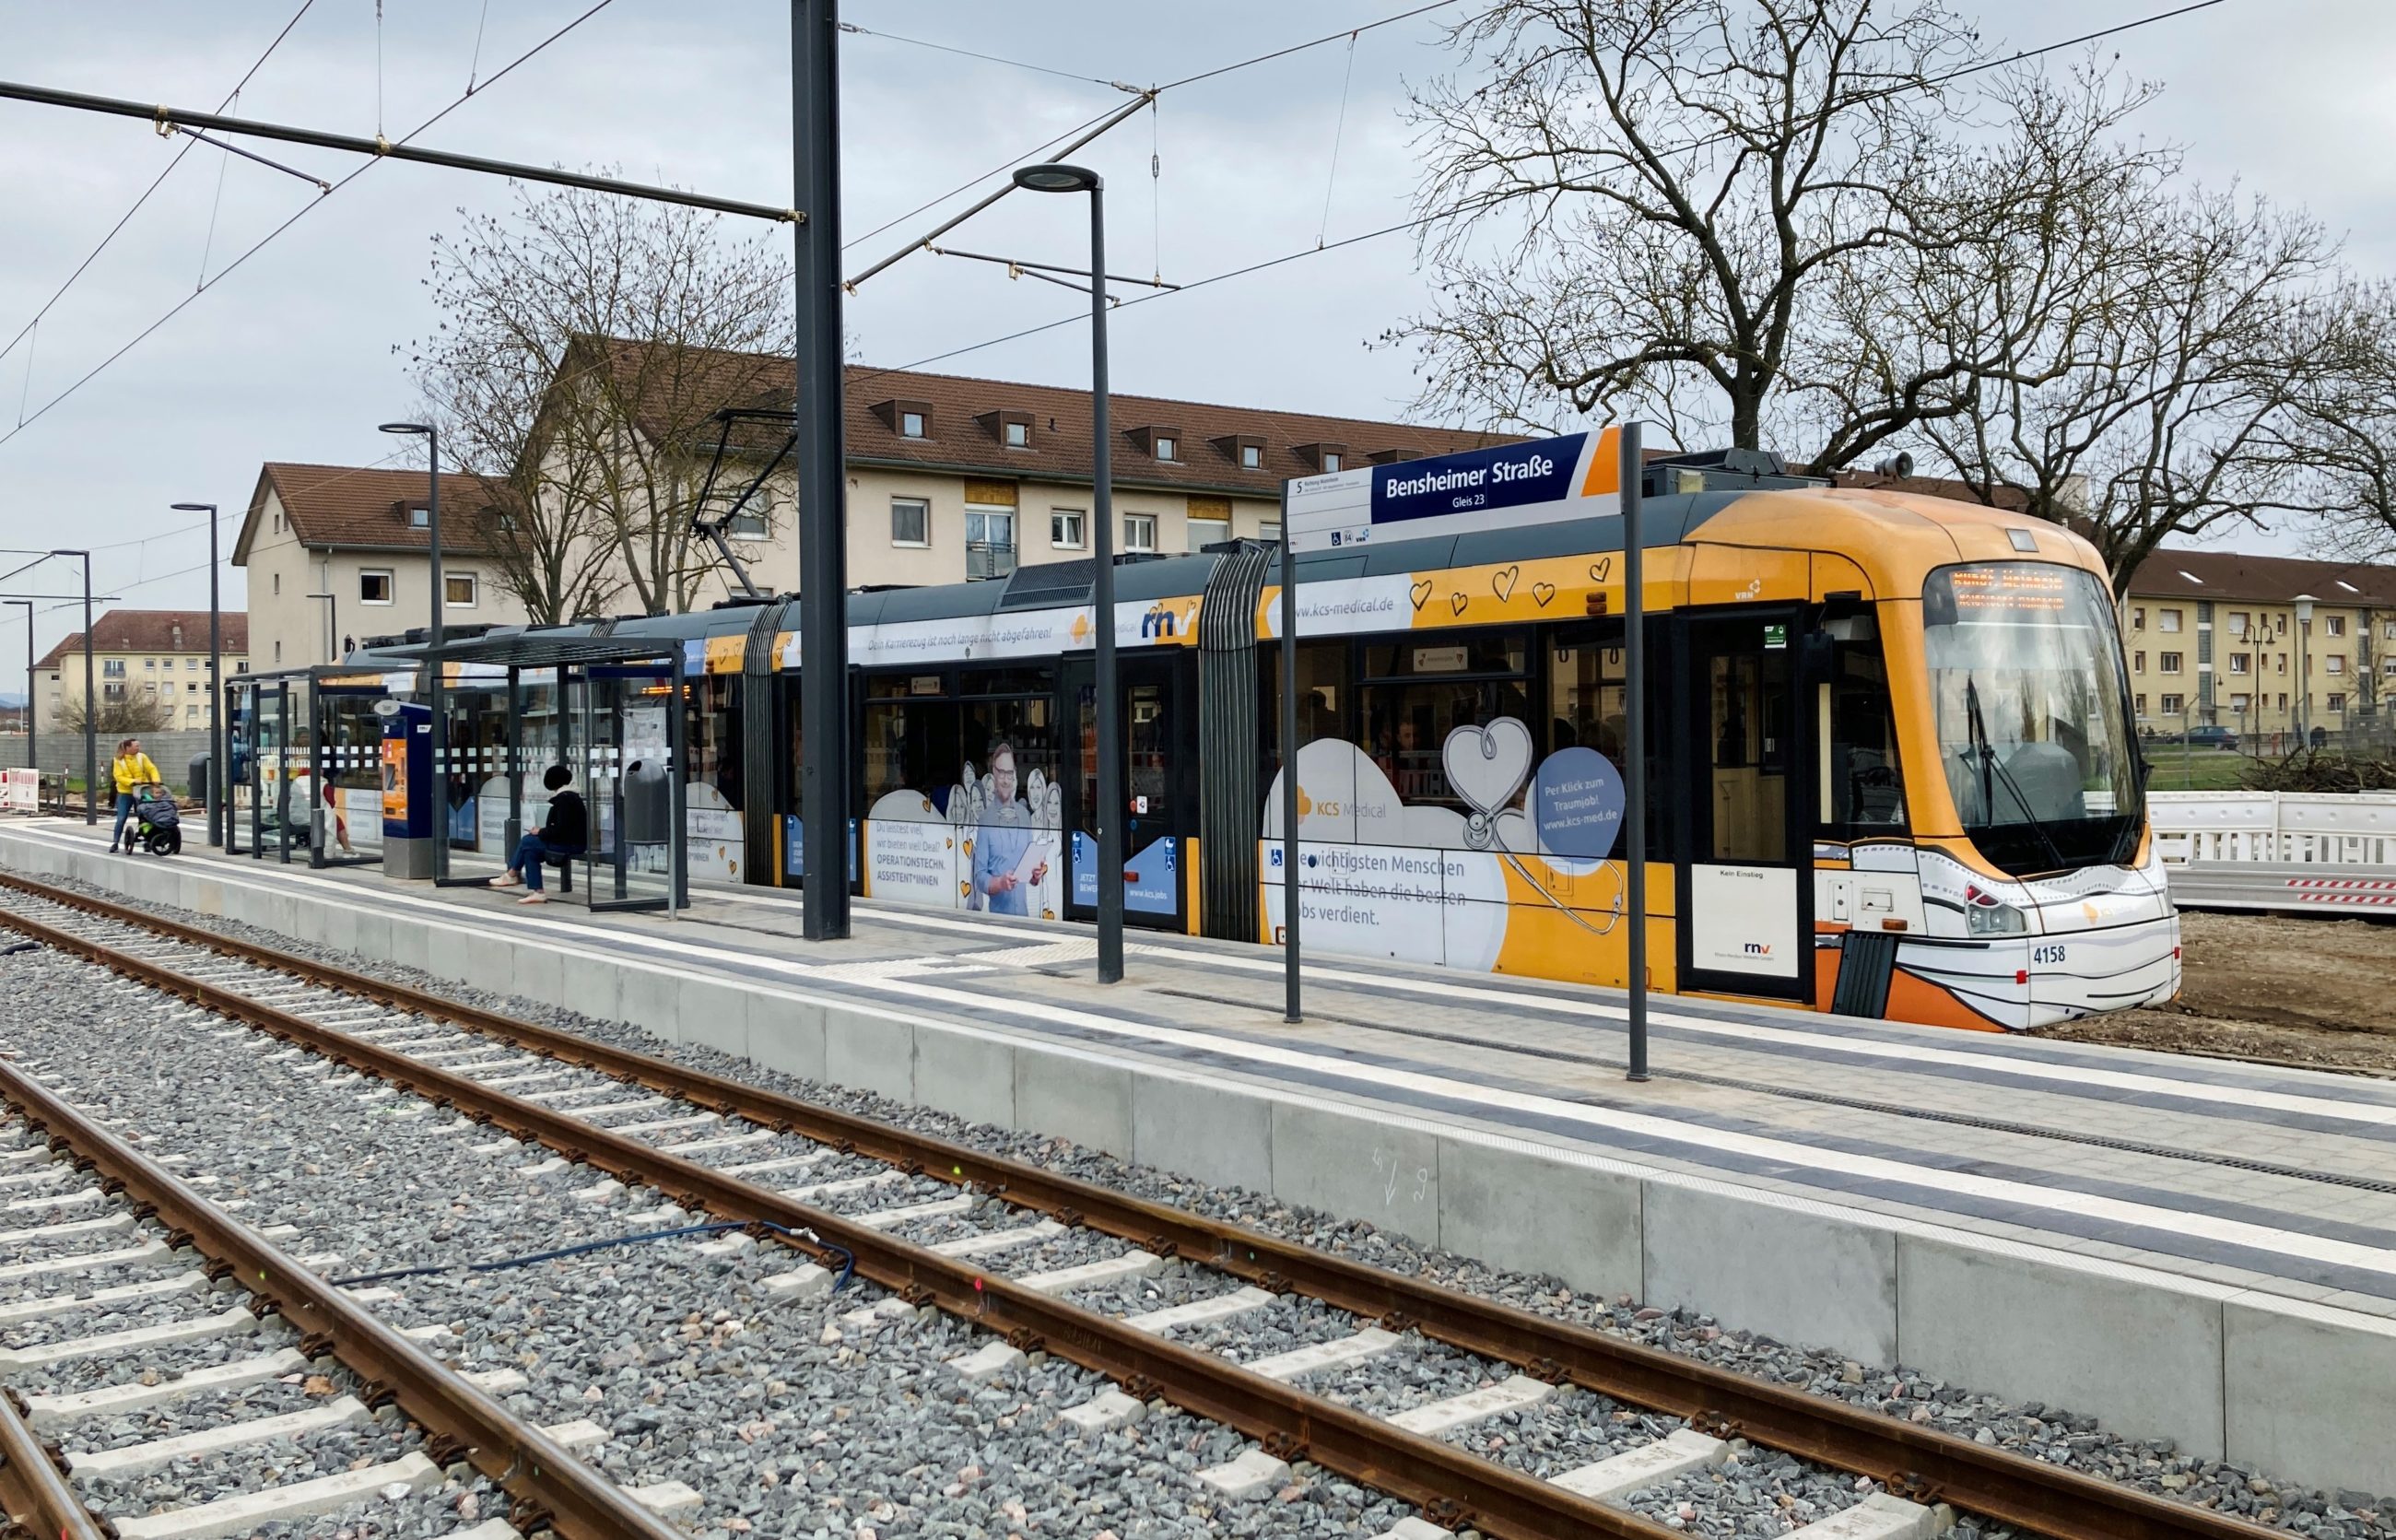 Der Stadtbahn Haltepunkt Bensheimer Strasse auf FRANKLIN.